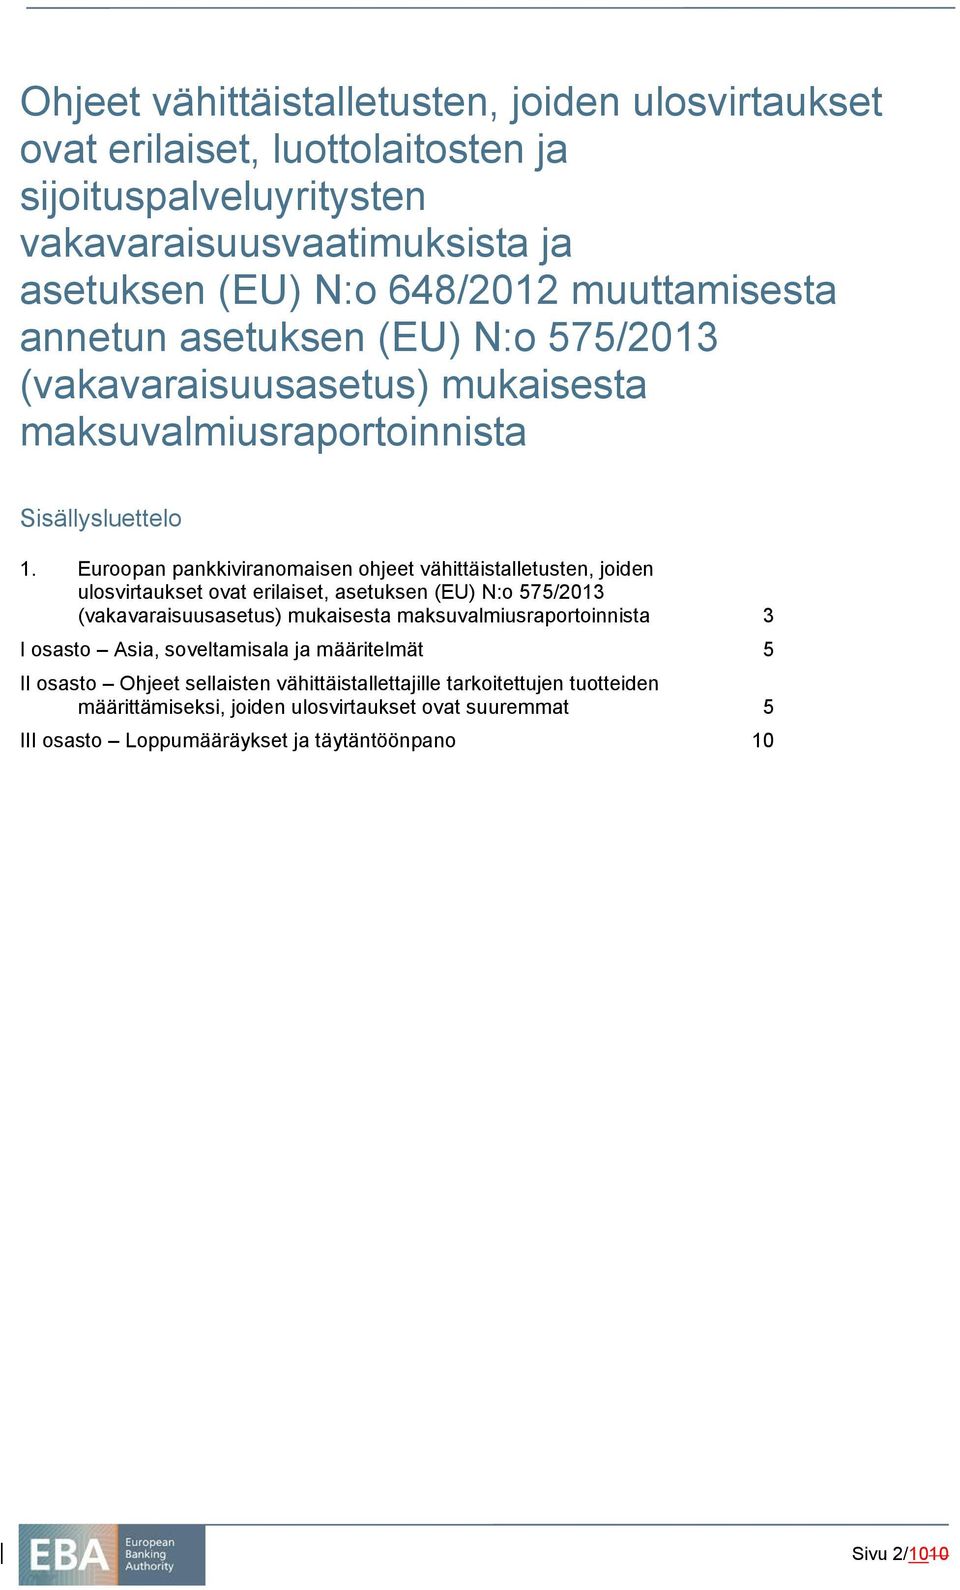 Euroopan pankkiviranomaisen ohjeet vähittäistalletusten, joiden ulosvirtaukset ovat erilaiset, asetuksen (EU) N:o 575/2013 (vakavaraisuusasetus) mukaisesta